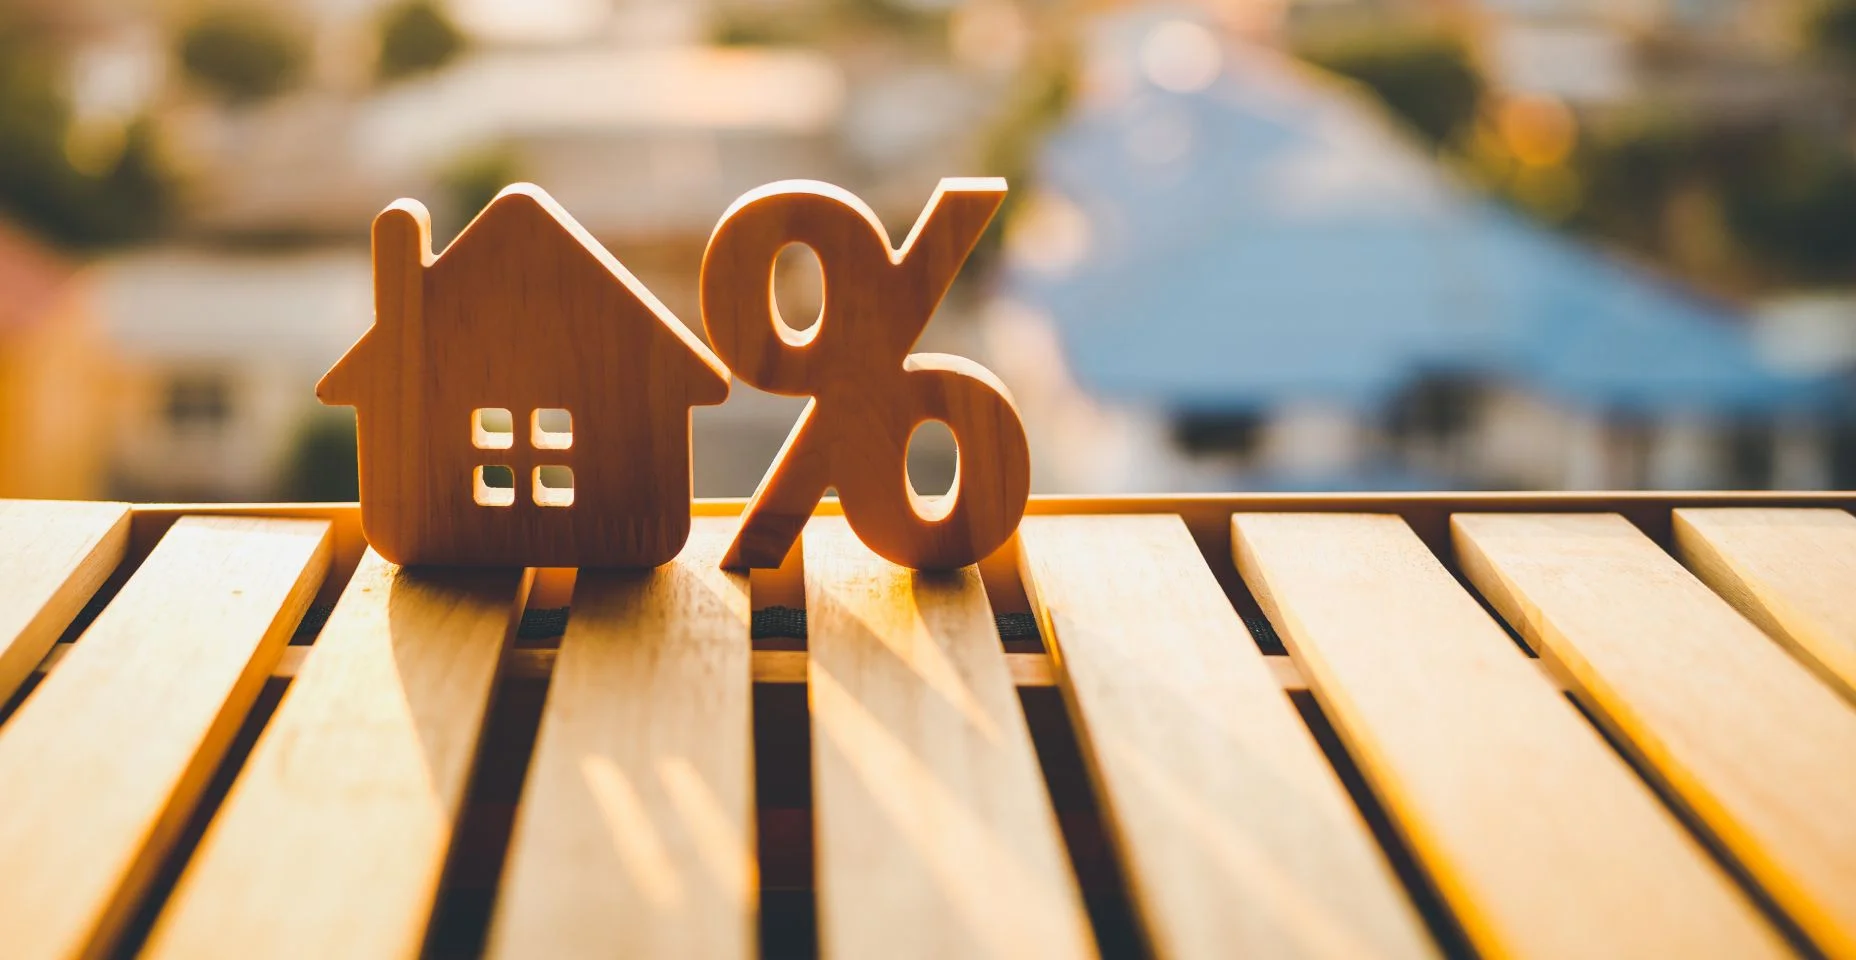 Porcentagem e ícone do símbolo do sinal da casa de madeira na mesa de madeira. Conceitos de juros imobiliários, imóveis, investimento em inflação.